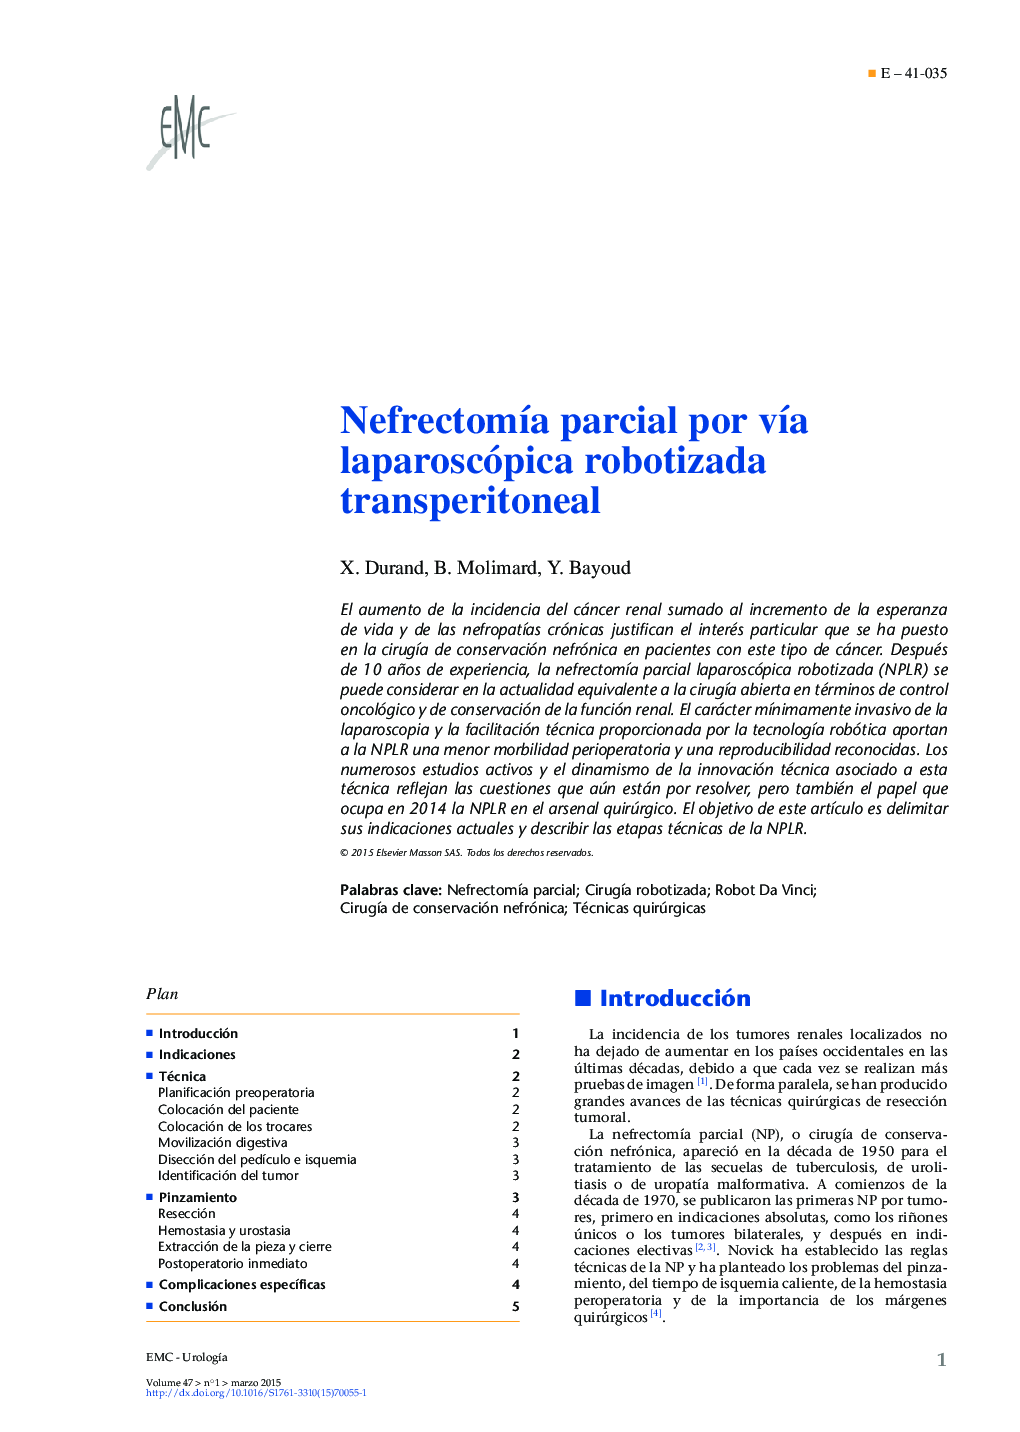 Nefrectomía parcial por vía laparoscópica robotizada transperitoneal